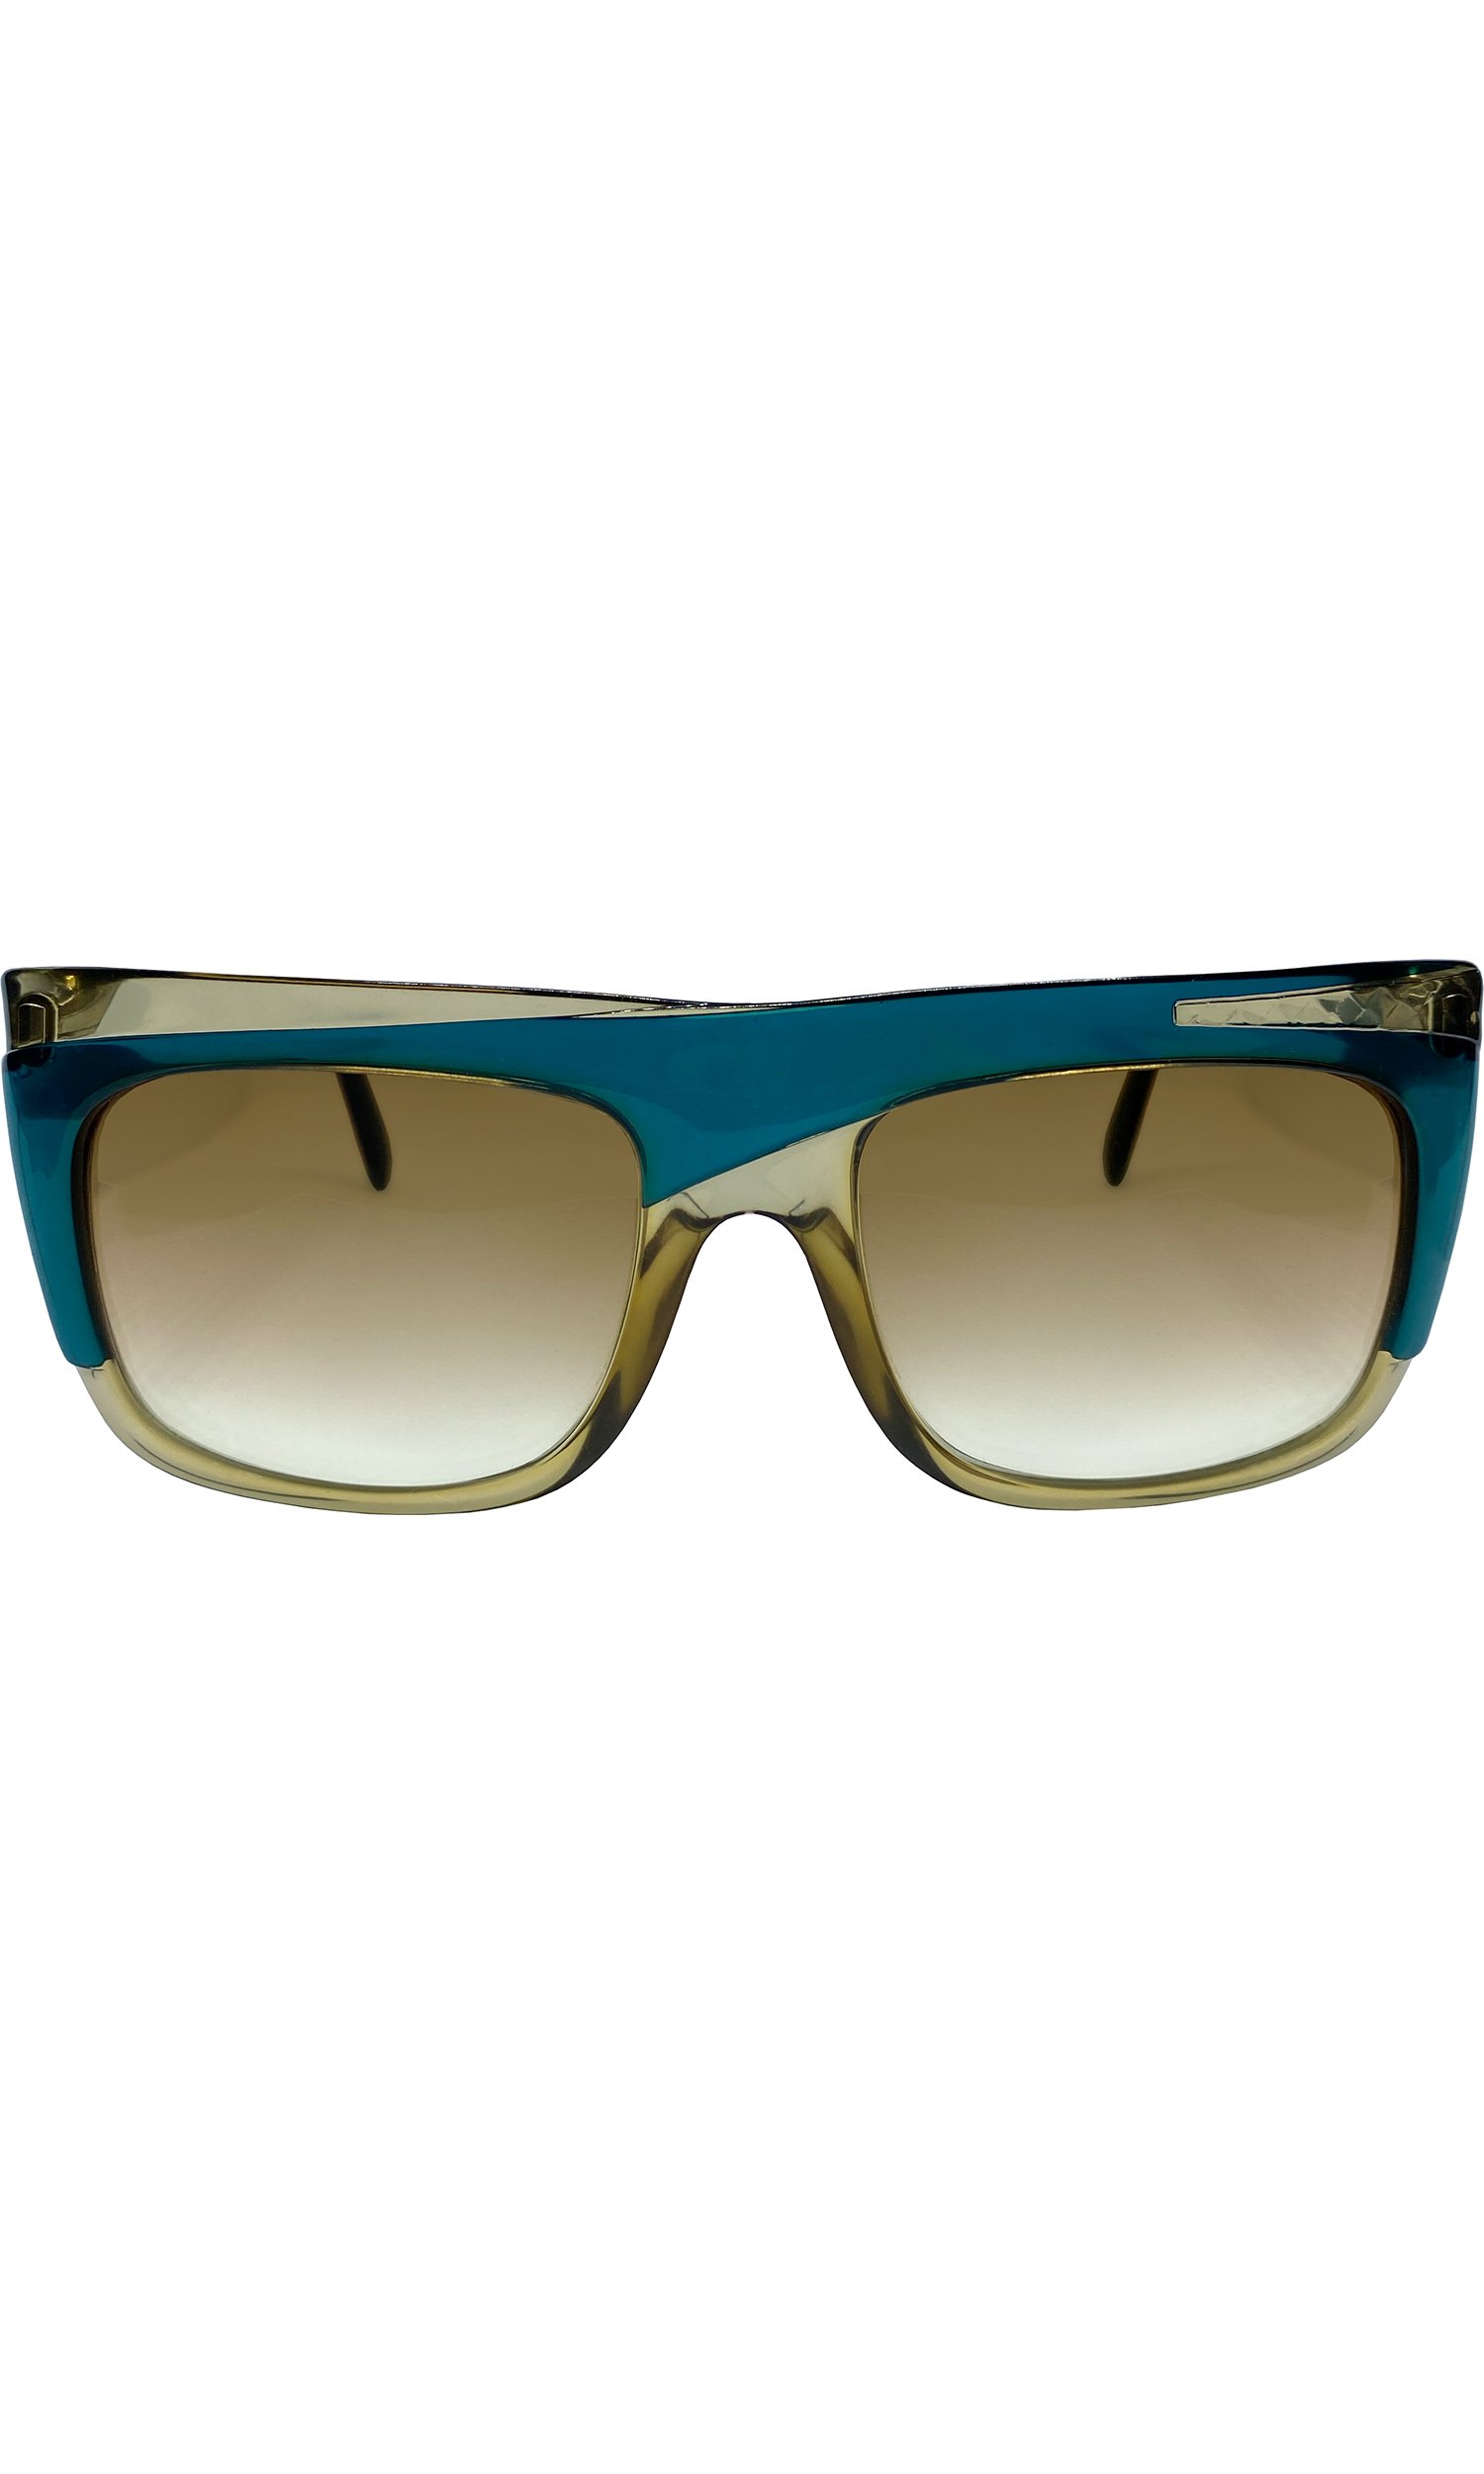 Christian Dior Sunglasses Frame 